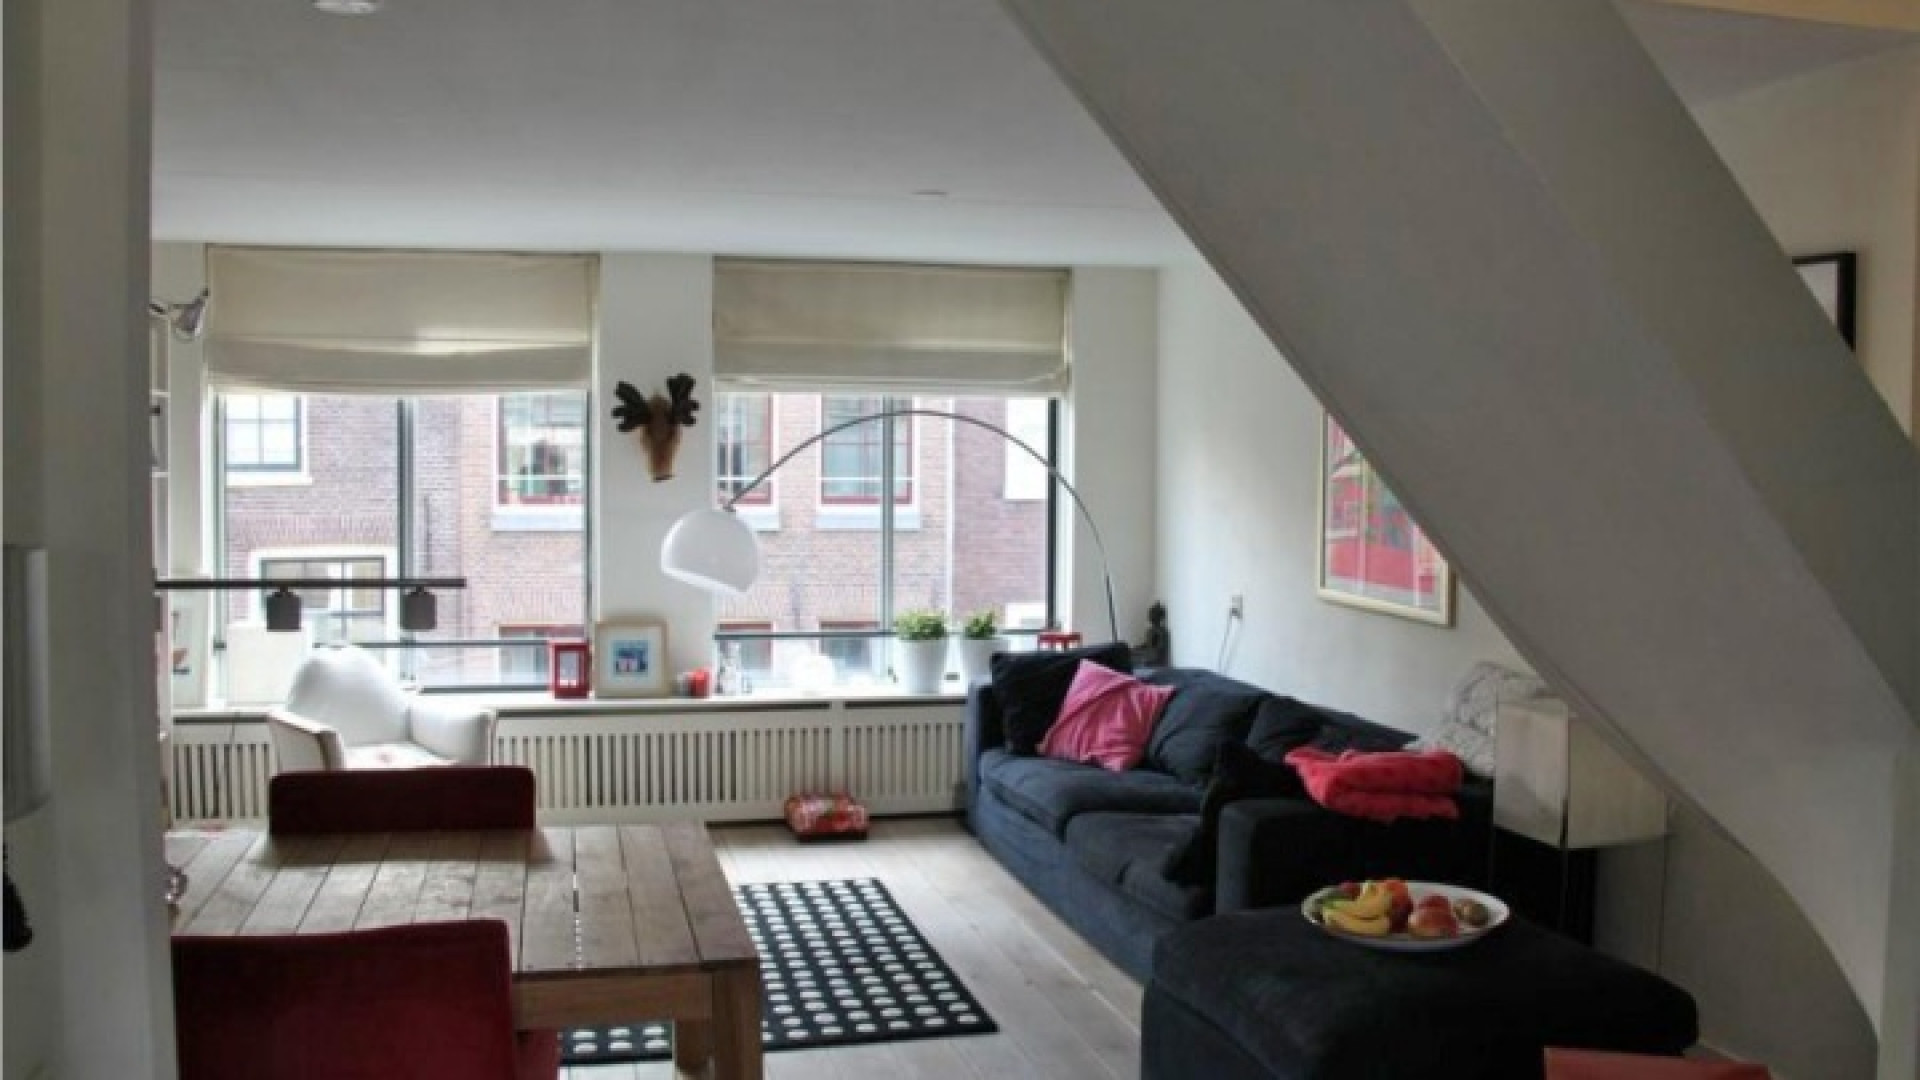 Frank Evenblij haalt zijn huis in de Amsterdamse Jordaan uit de verkoop. Zie foto's 4